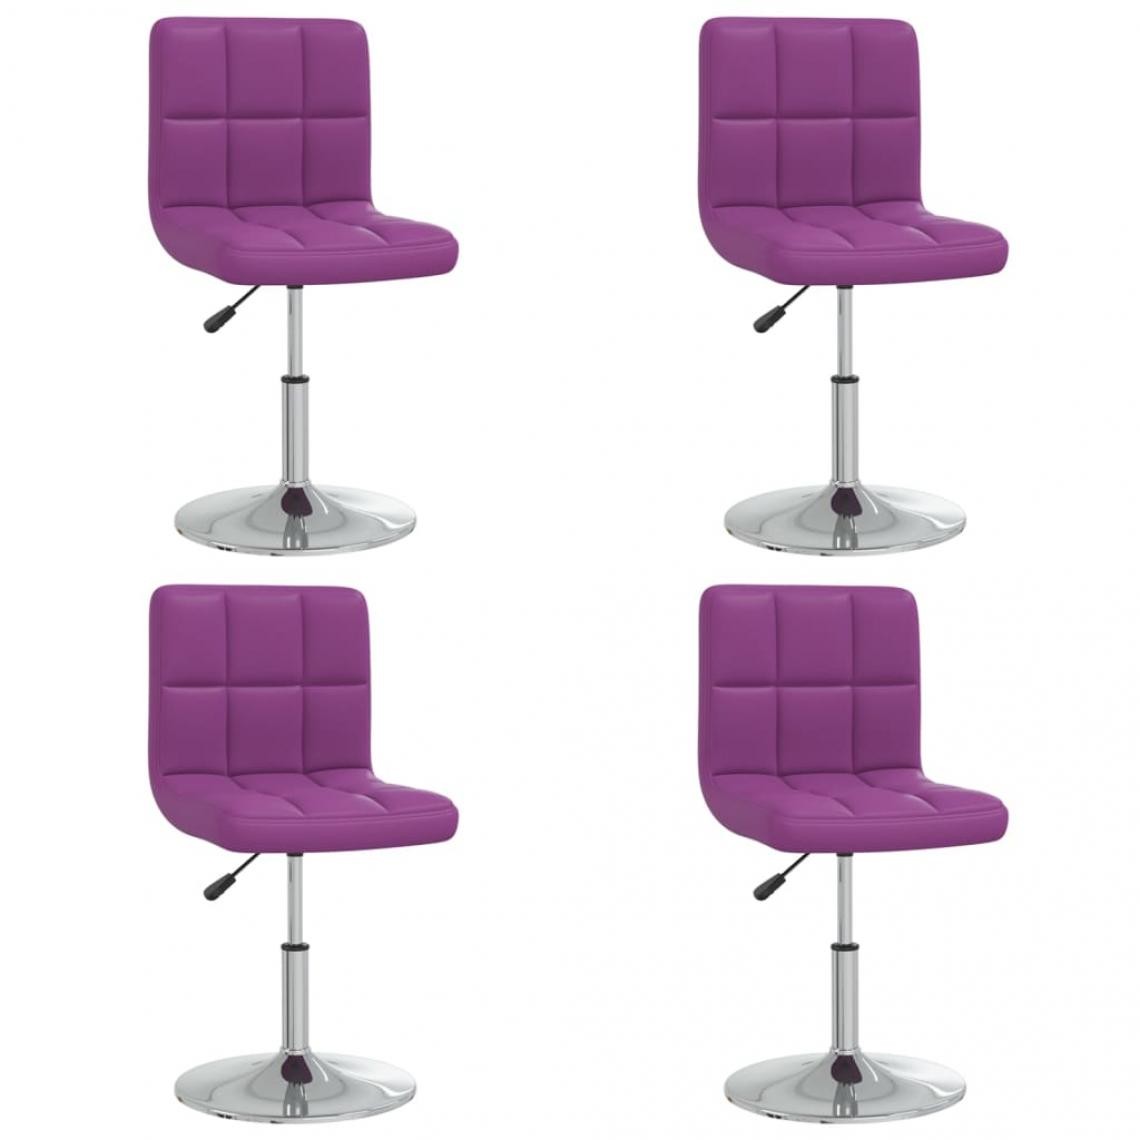 Decoshop26 - Lot de 4 chaises de salle à manger cuisine design contemporain similicuir violet CDS022071 - Chaises